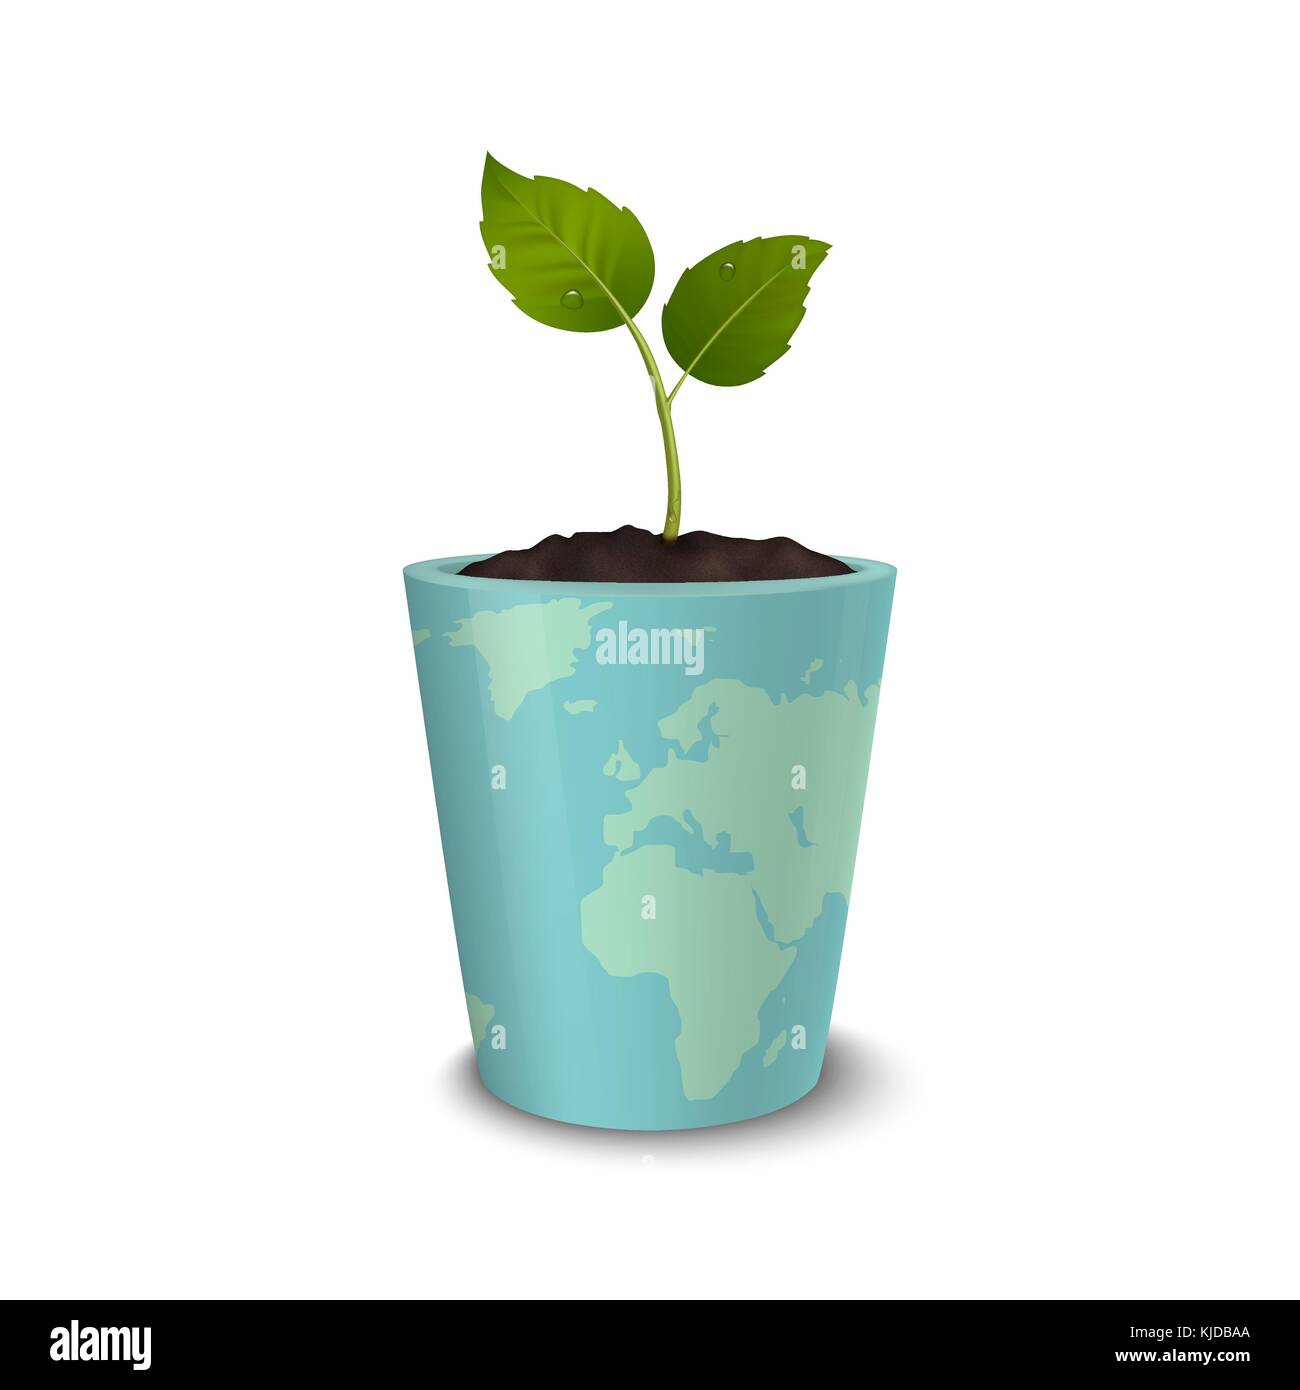 Ecology concept. le jour de la terre, la Journée mondiale de l'environnement, de sauver la terre ou green day. vector background avec sprout dans un pot de fleurs avec une impression de la terre, isolé sur fond blanc. eps10. Illustration de Vecteur